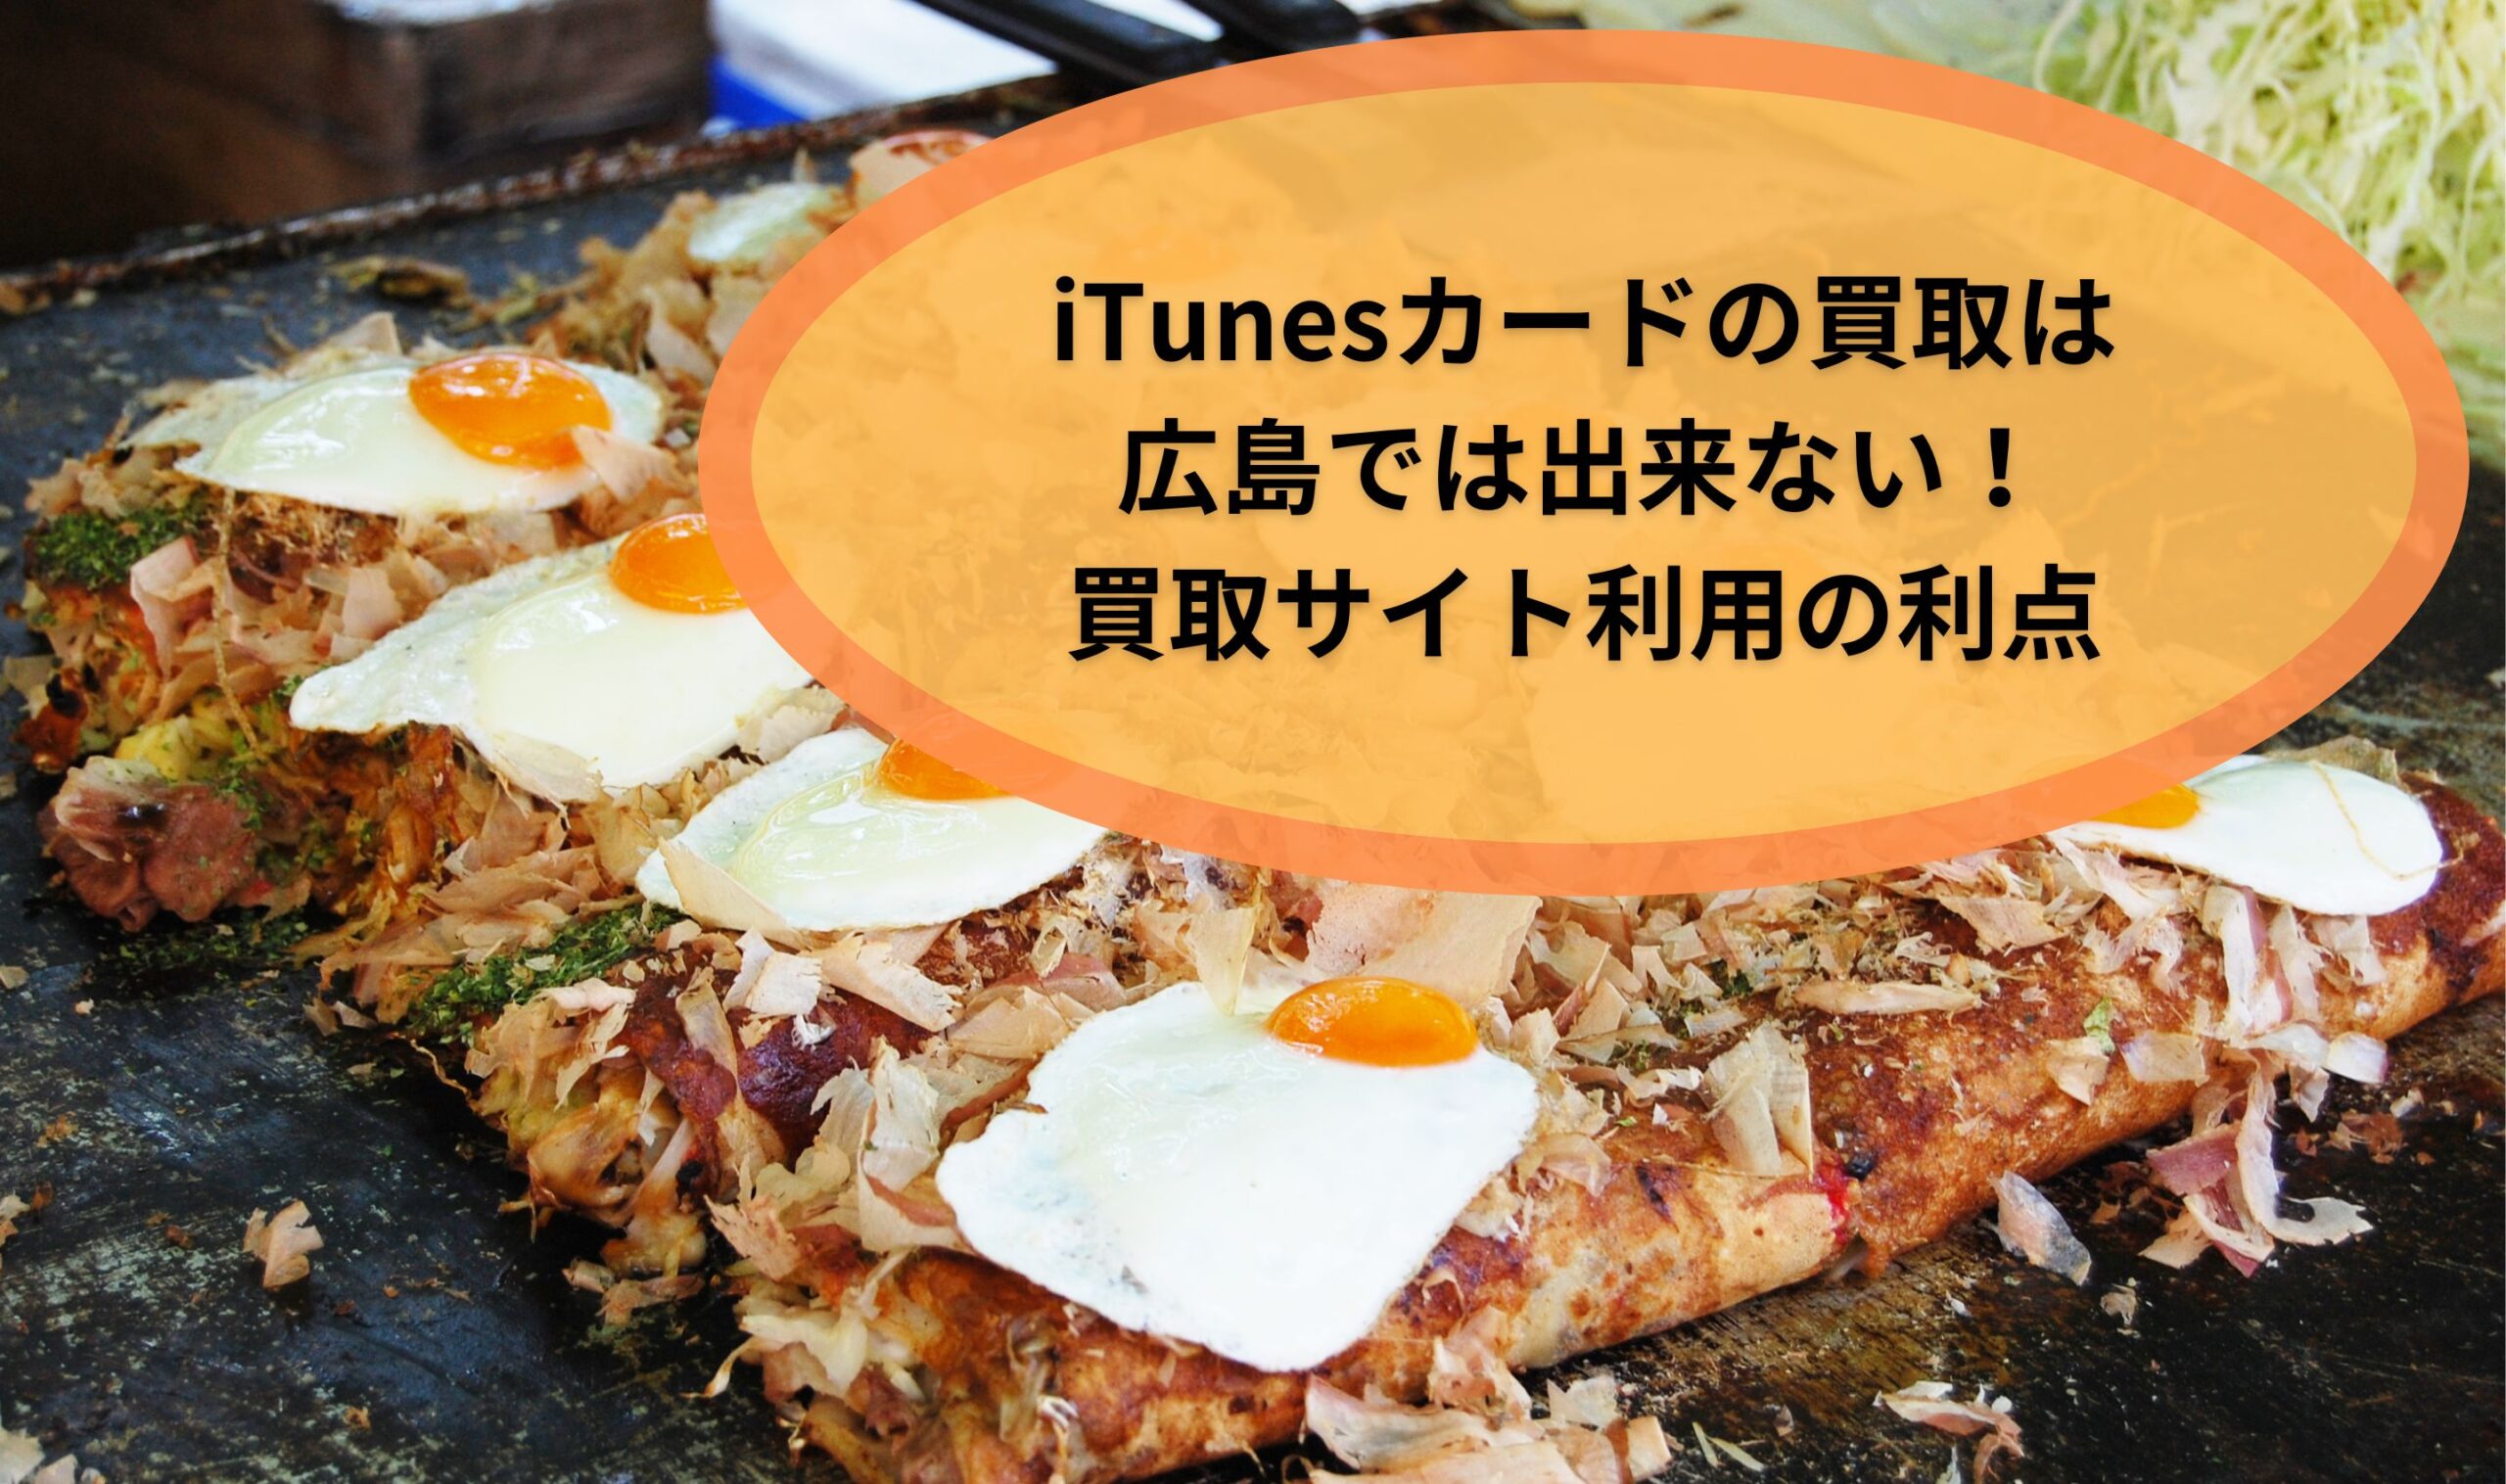 iTunesカードの買取は広島では出来ない！買取サイト利用の利点